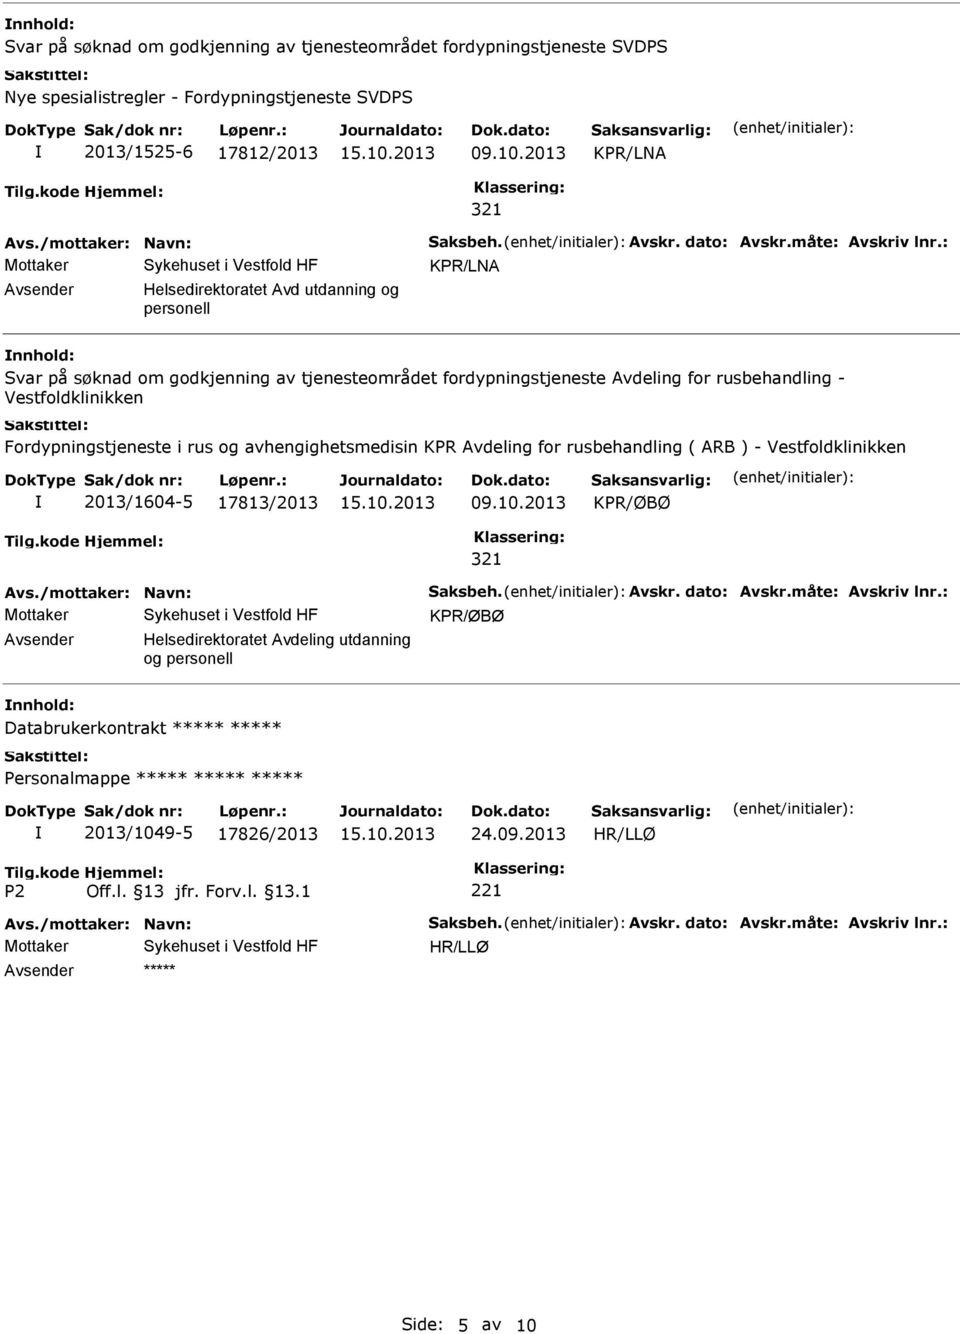 Vestfoldklinikken Fordypningstjeneste i rus og avhengighetsmedisin KPR Avdeling for rusbehandling ( ARB ) - Vestfoldklinikken 2013/1604-5 17813/2013 09.10.